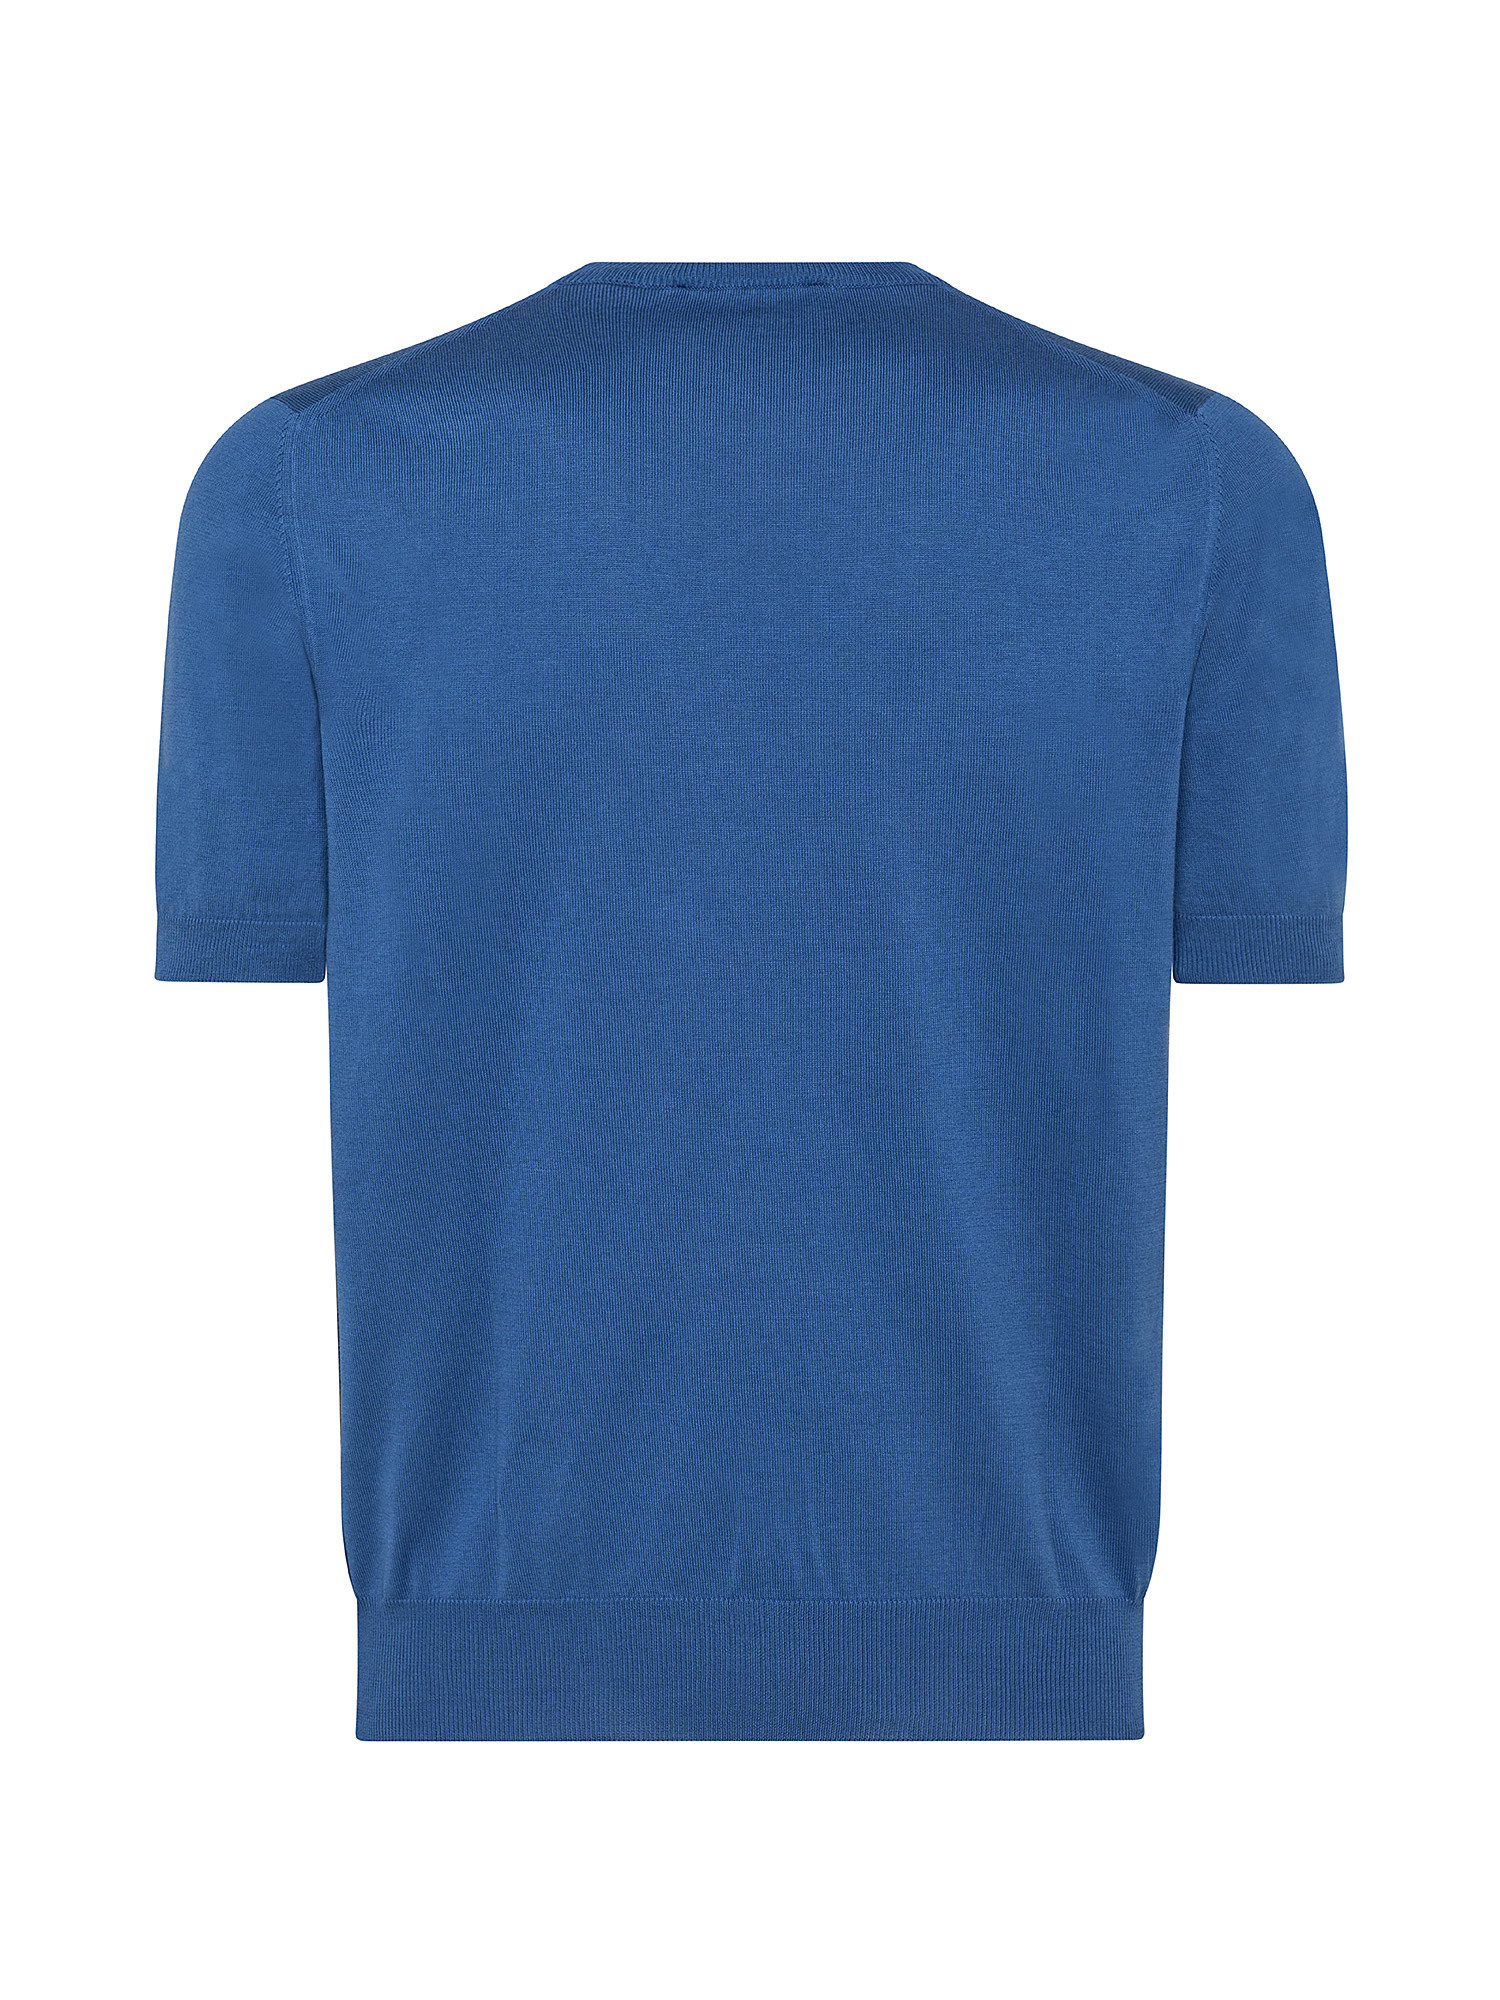 T-shirt in maglia a maniche corte in sottile cotone organico biologico effetto Vintage, Blu chiaro, large